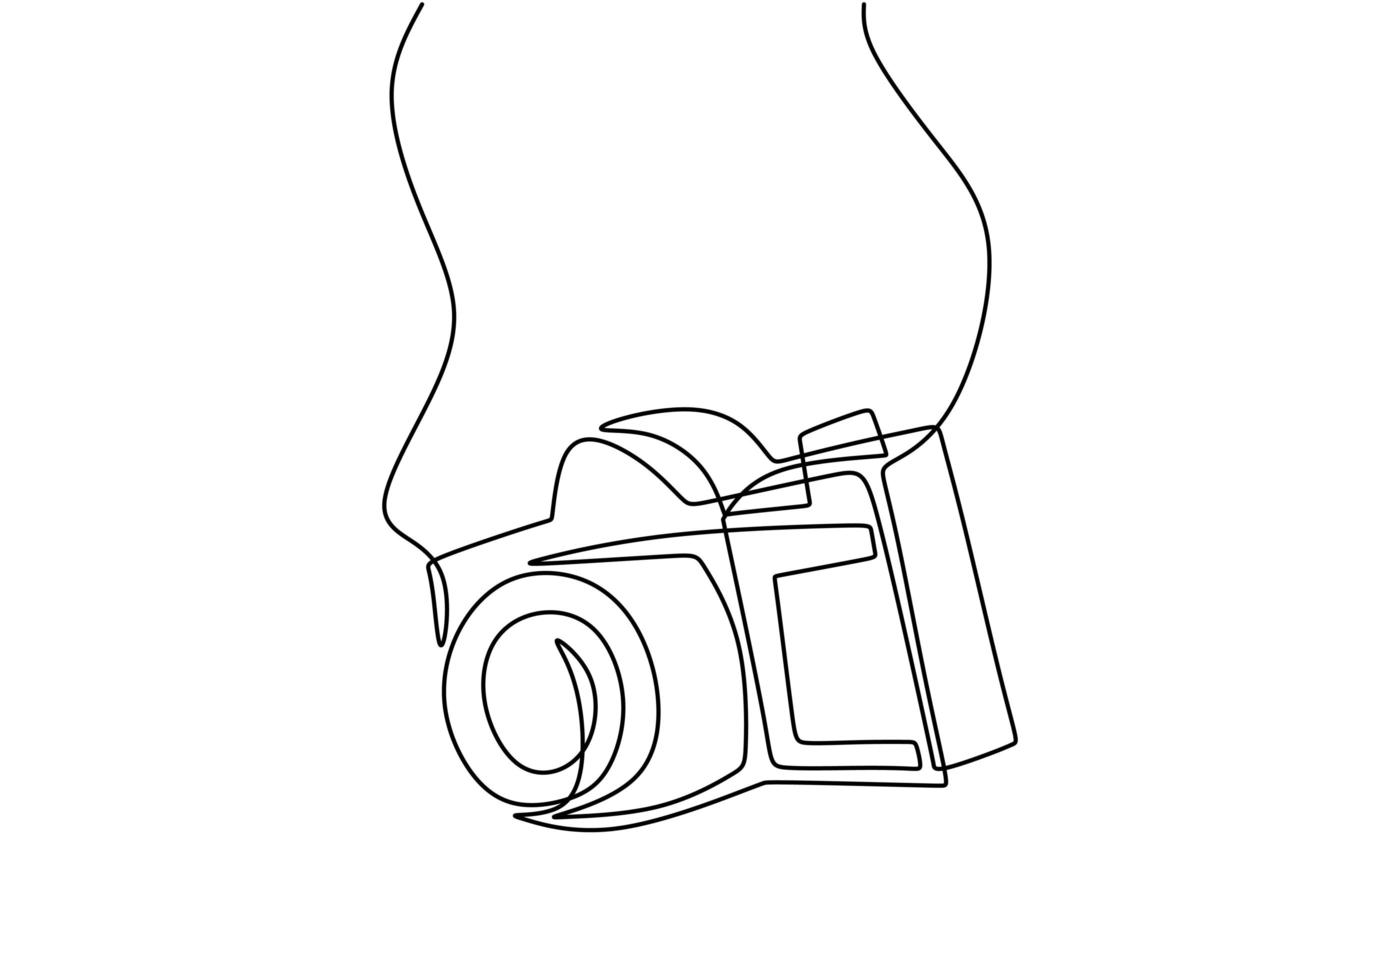 una linea di design della fotocamera. vettore digitale della fotocamera reflex digitale con linea continua singola che disegna stile lineare minimalista. concetto di attrezzatura fotografica isolato su sfondo bianco illustrazione vettoriale